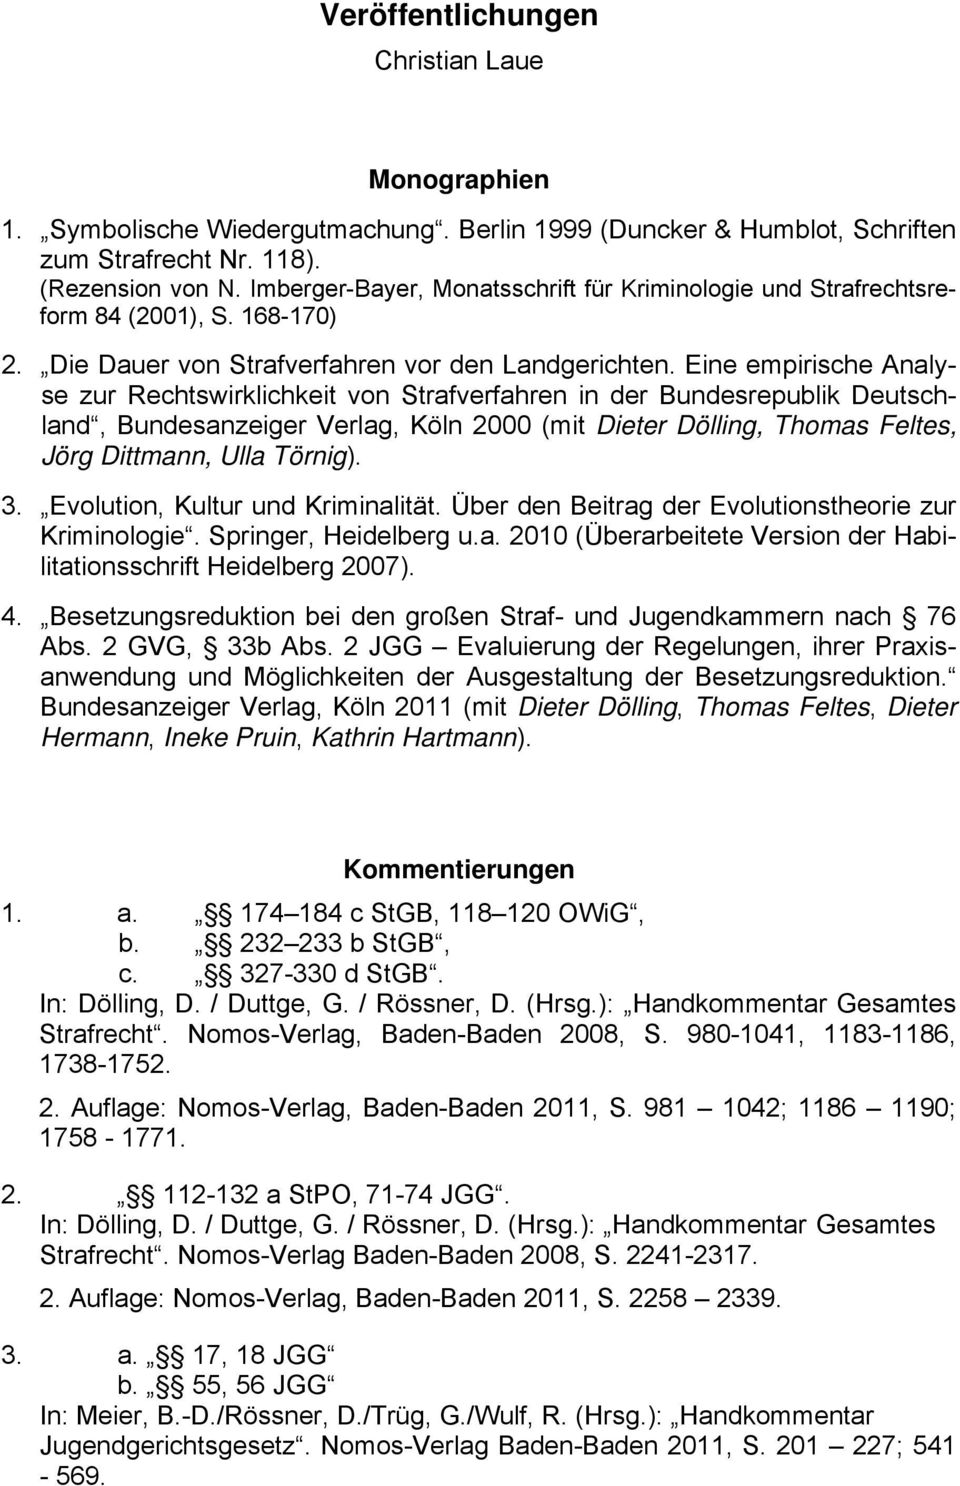 Eine empirische Analyse zur Rechtswirklichkeit von Strafverfahren in der Bundesrepublik Deutschland, Bundesanzeiger Verlag, Köln 2000 (mit Dieter Dölling, Thomas Feltes, Jörg Dittmann, Ulla Törnig).